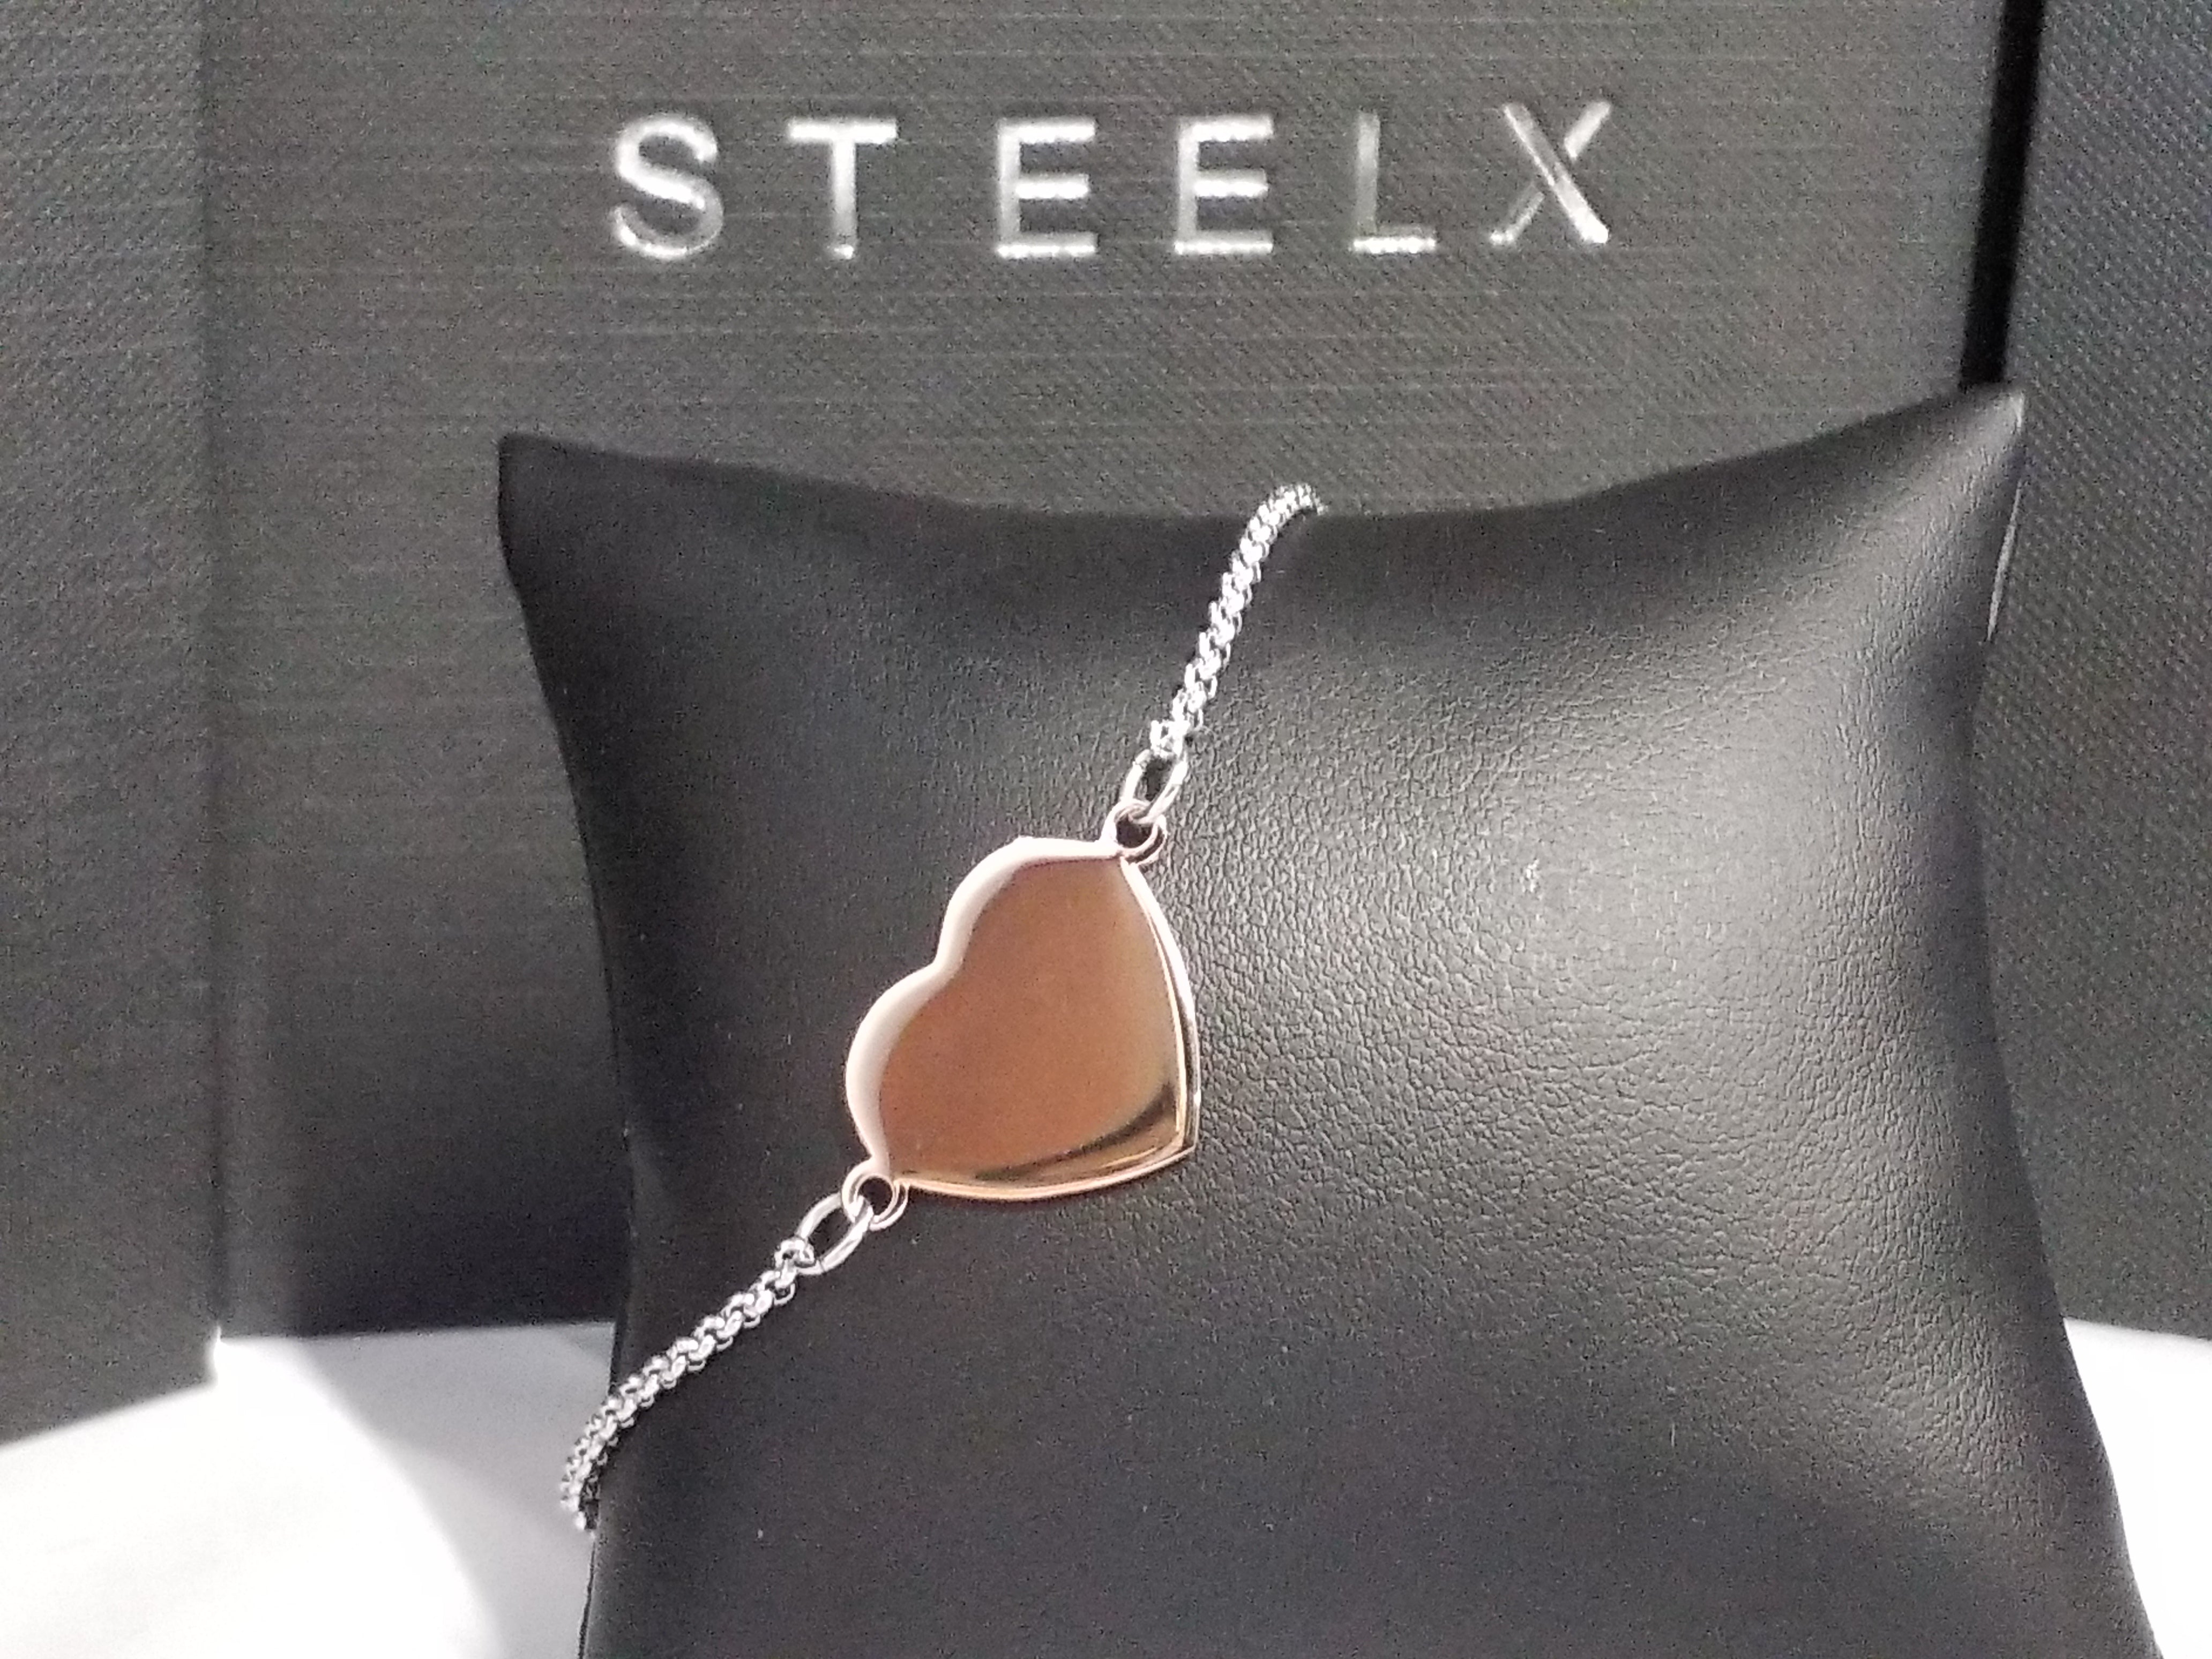 STEELX S/SBracelet - Heart